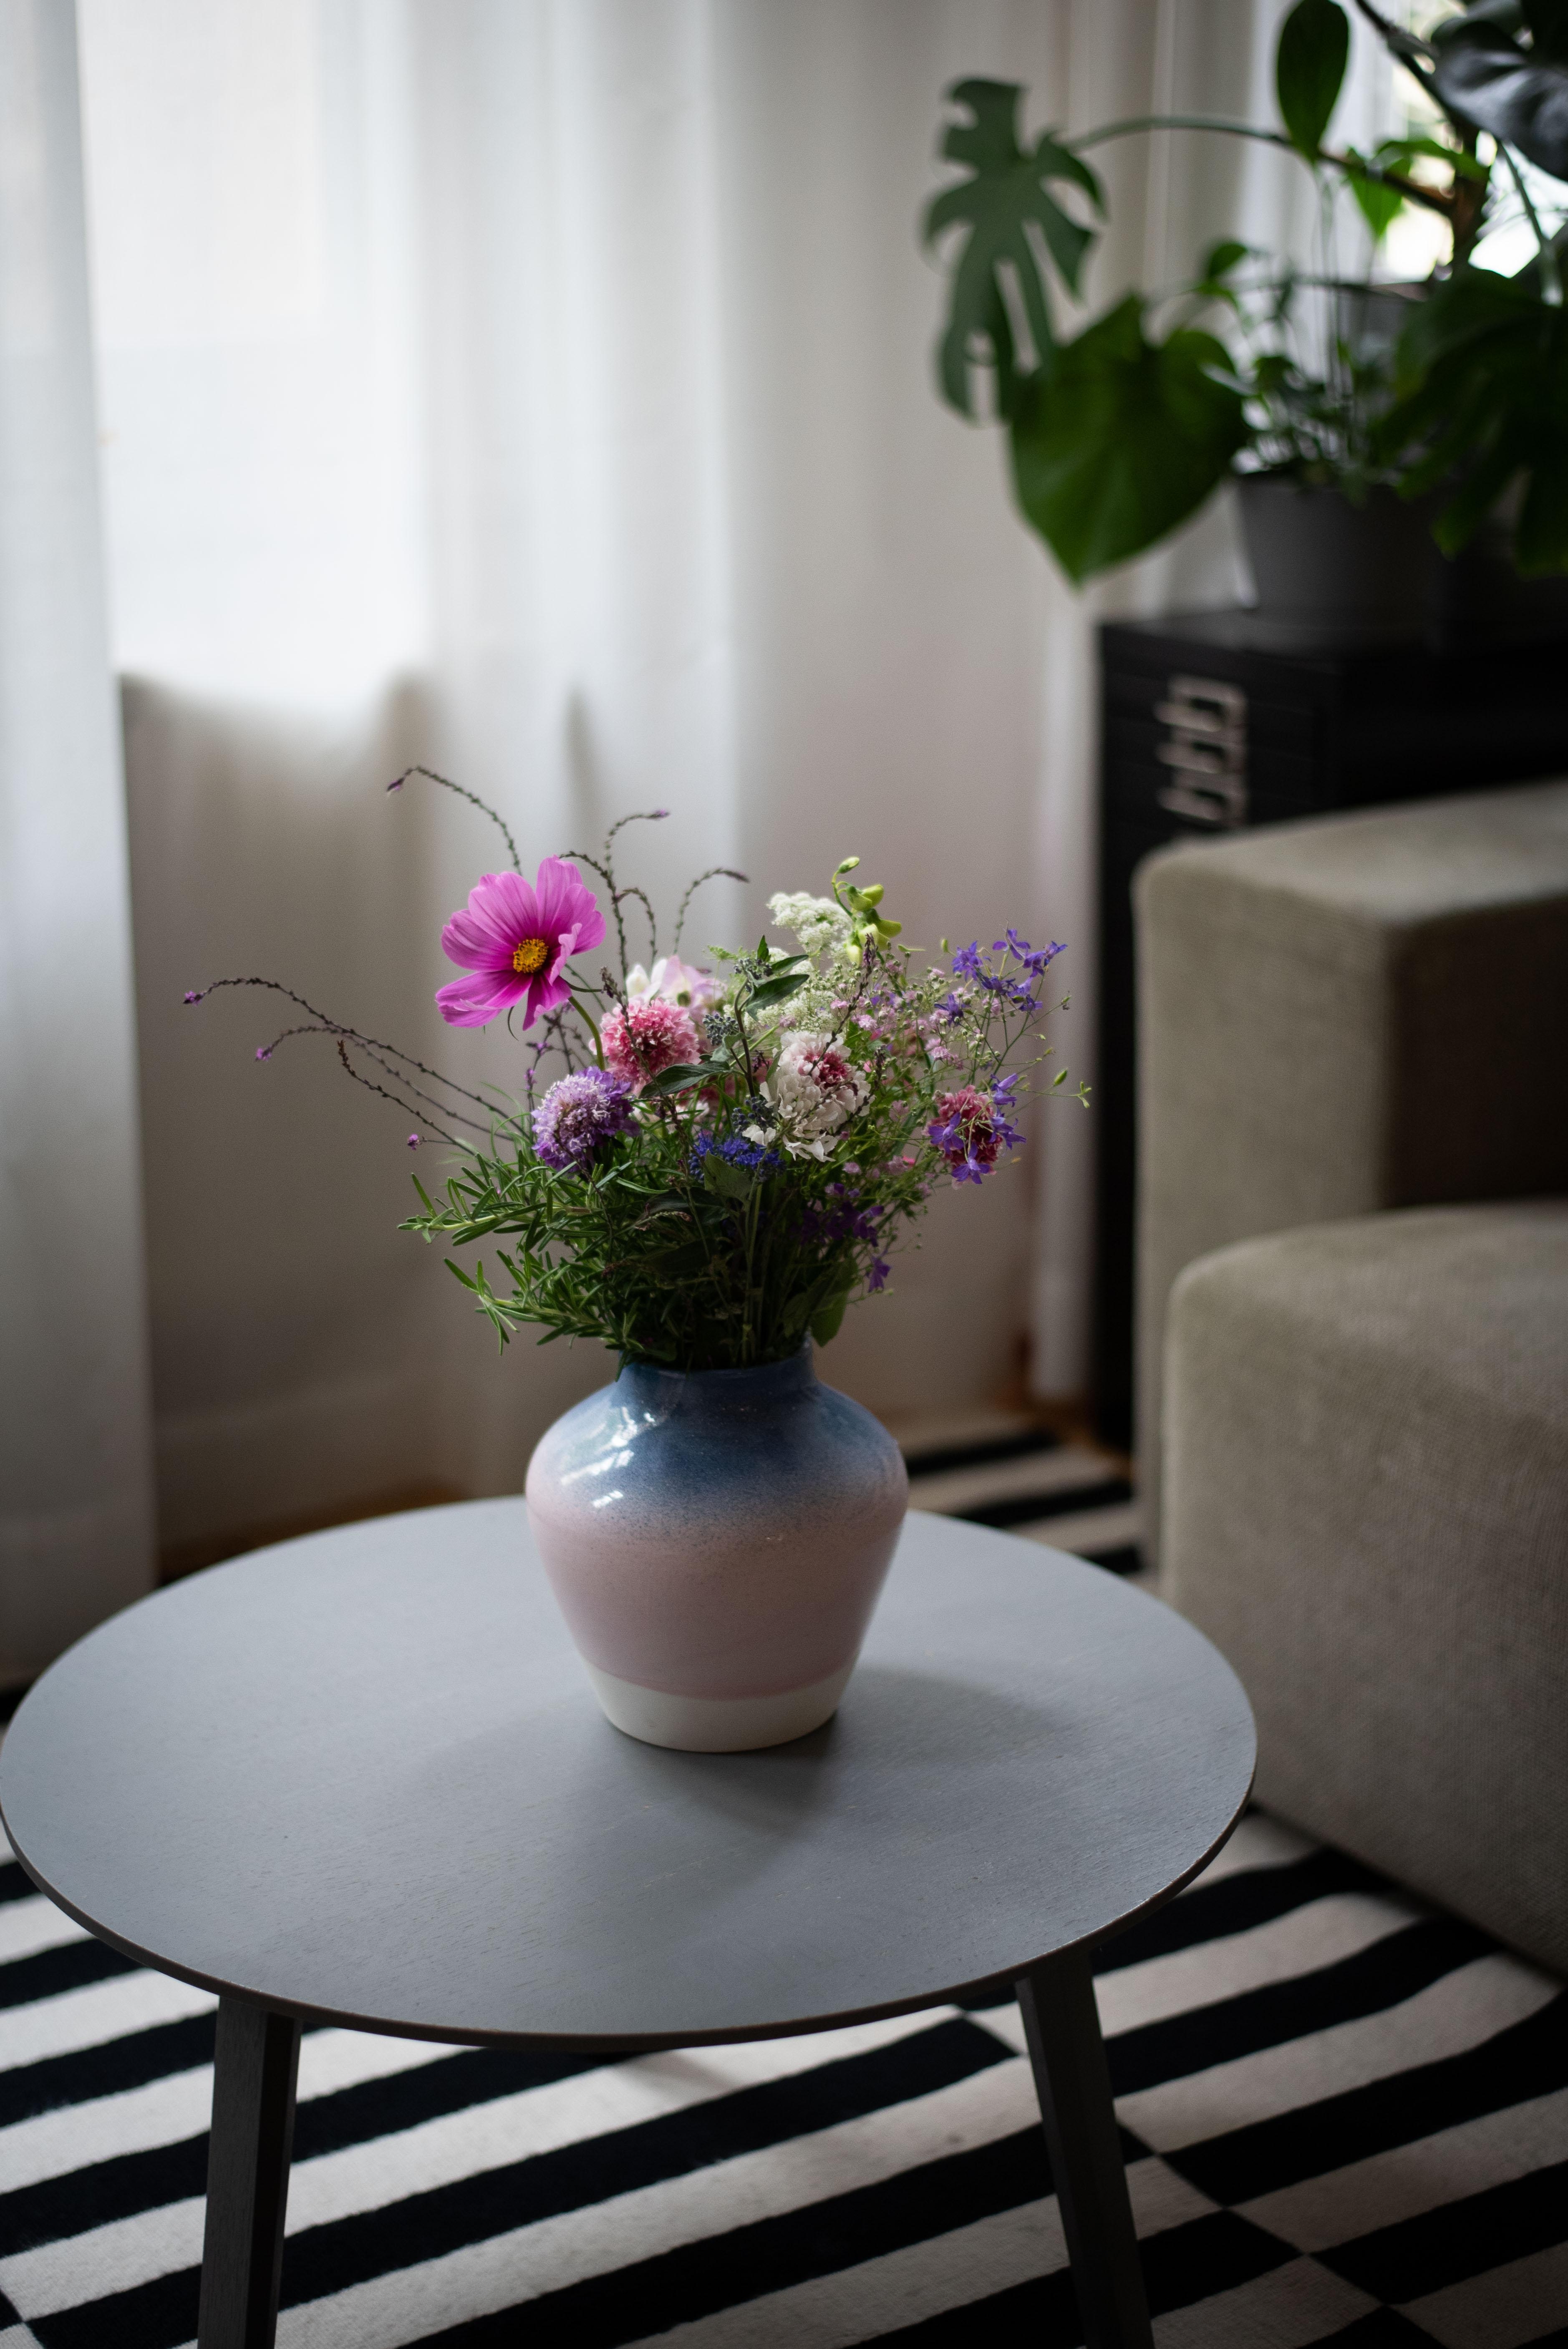 Happy Flowerfriday! #freshflowers #decoinspiration #vase #interior #wohnzimmer #fridaymood